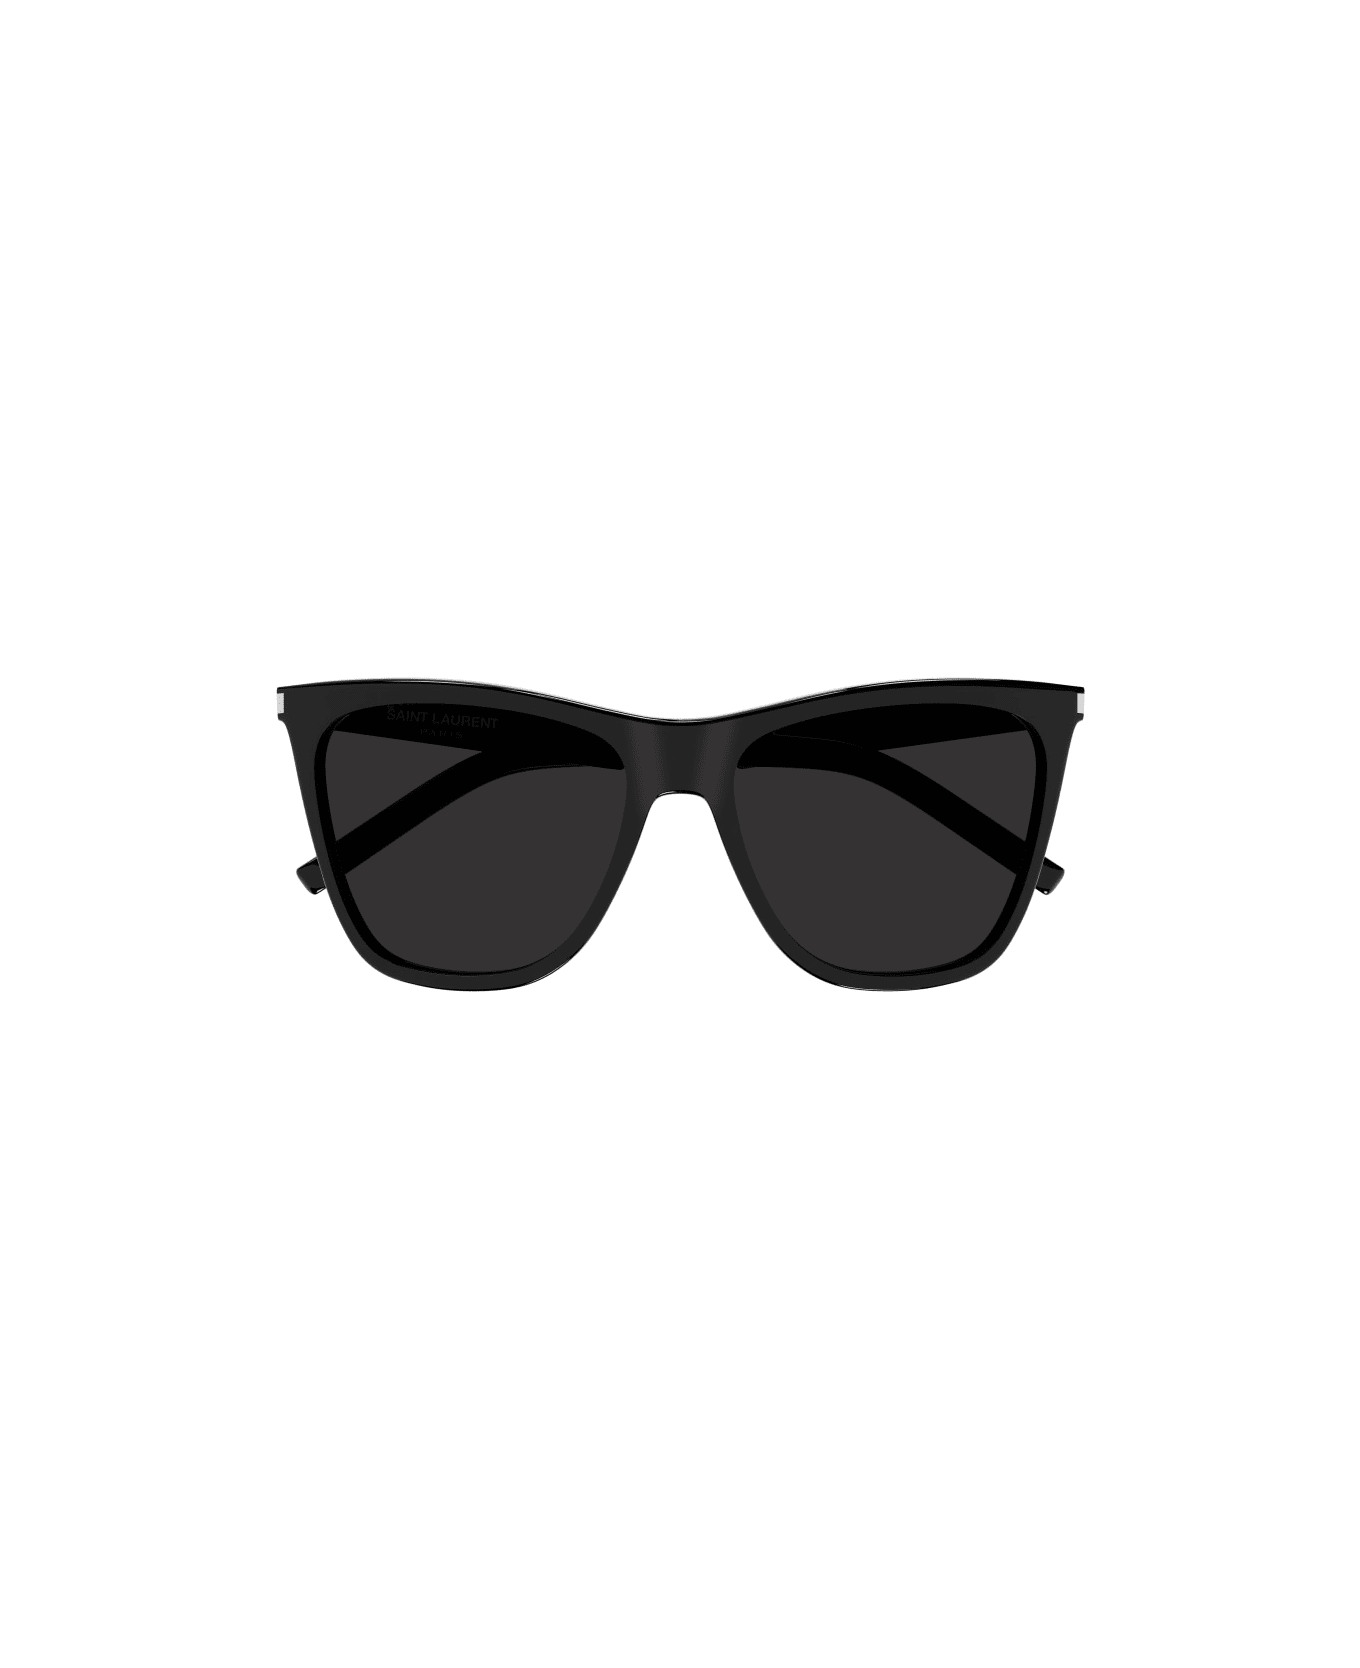 Saint Laurent Eyewear SL 526 Sunglasses - Black Black Black サングラス